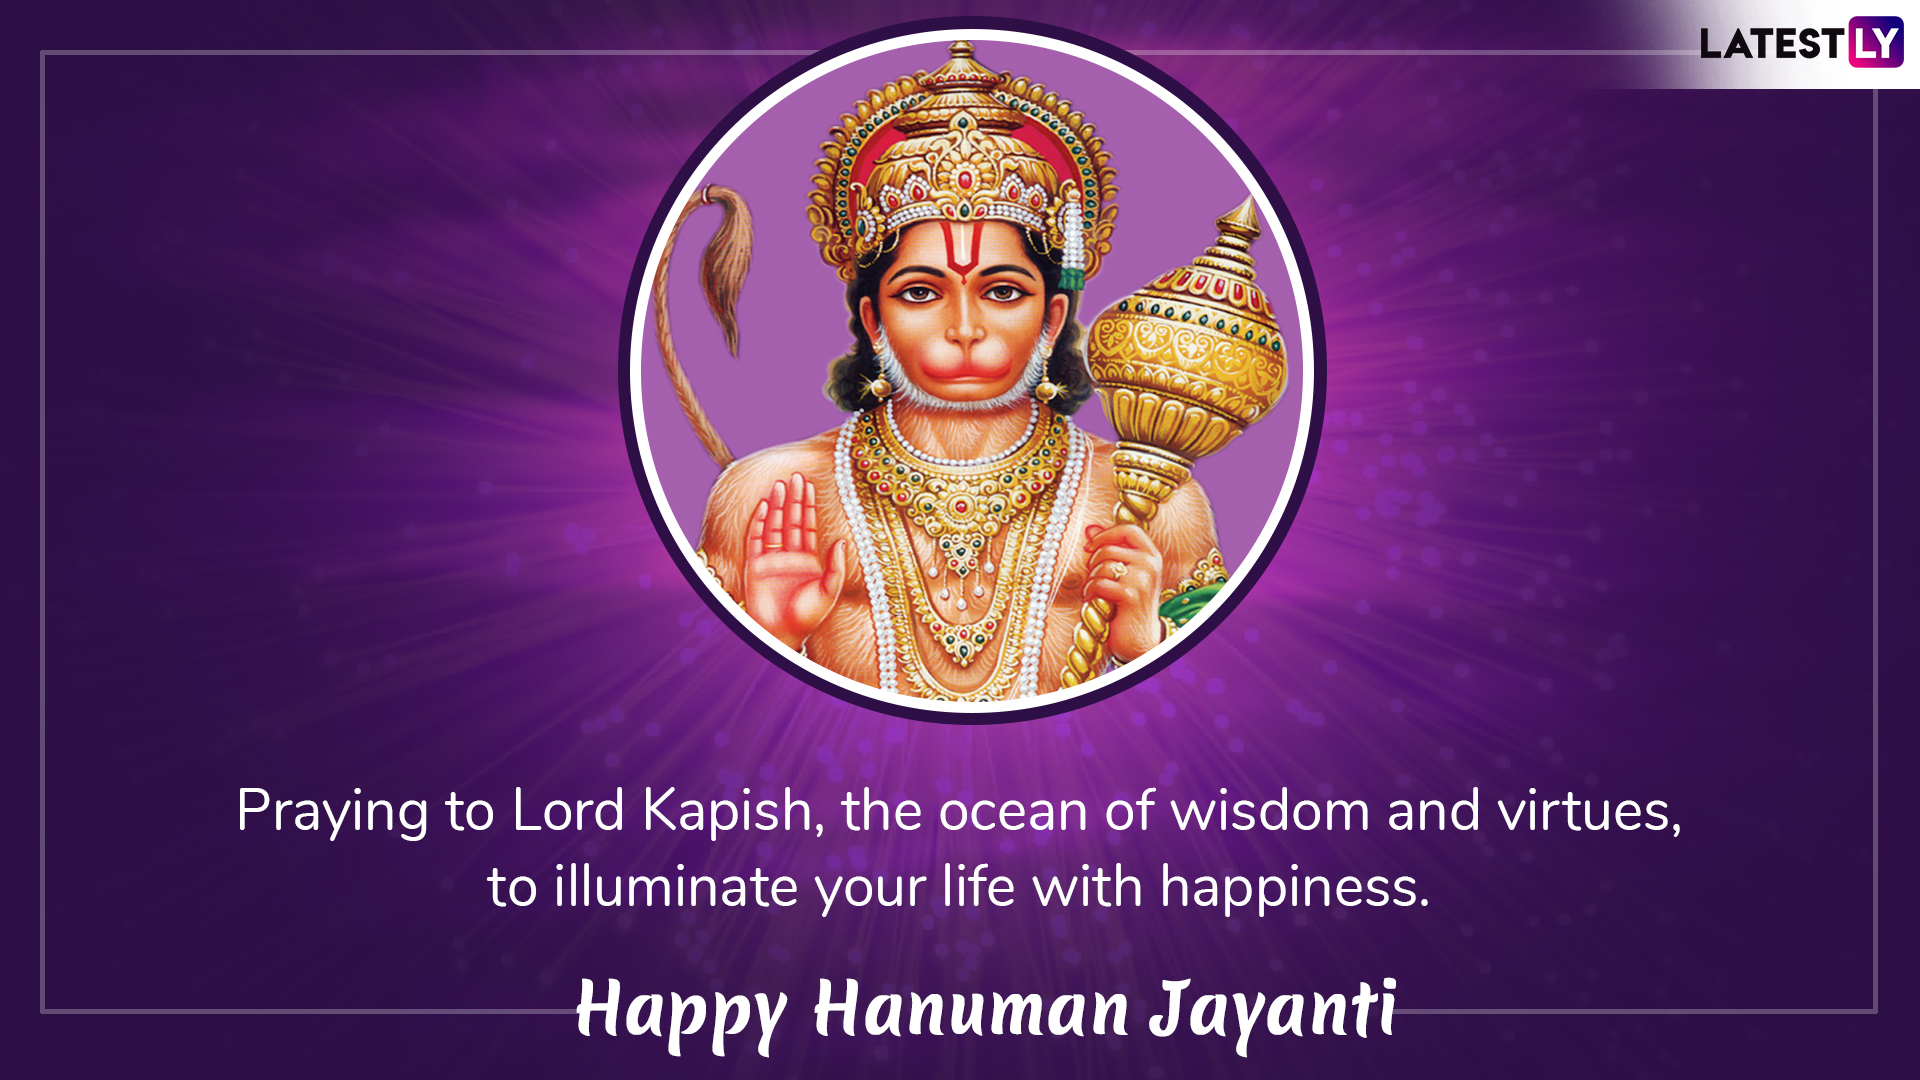 Hanuman Jayanti 2019 Wishes, Greetings in English ...